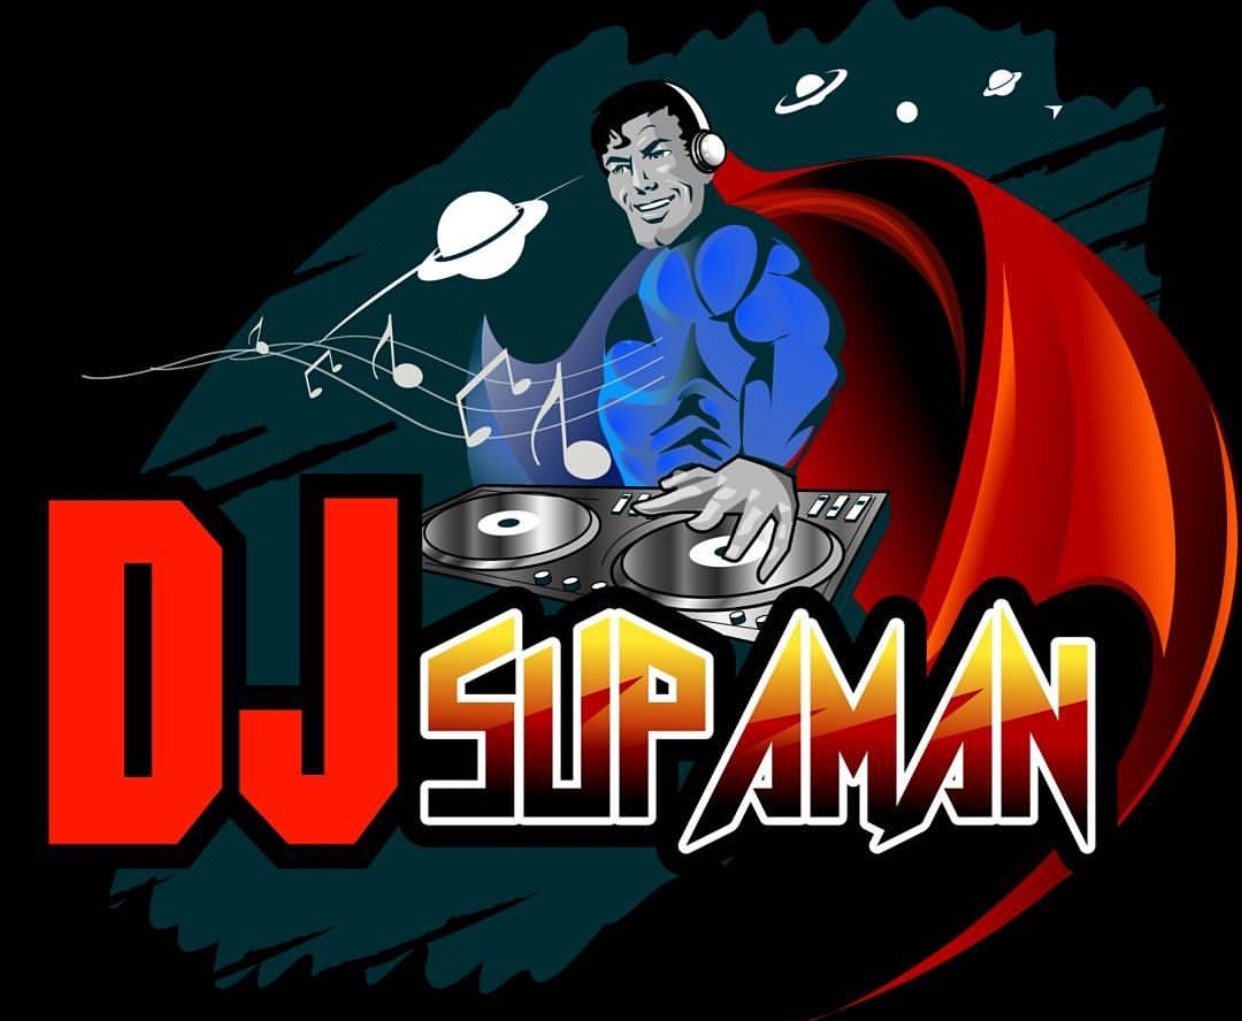 DJ Supaman